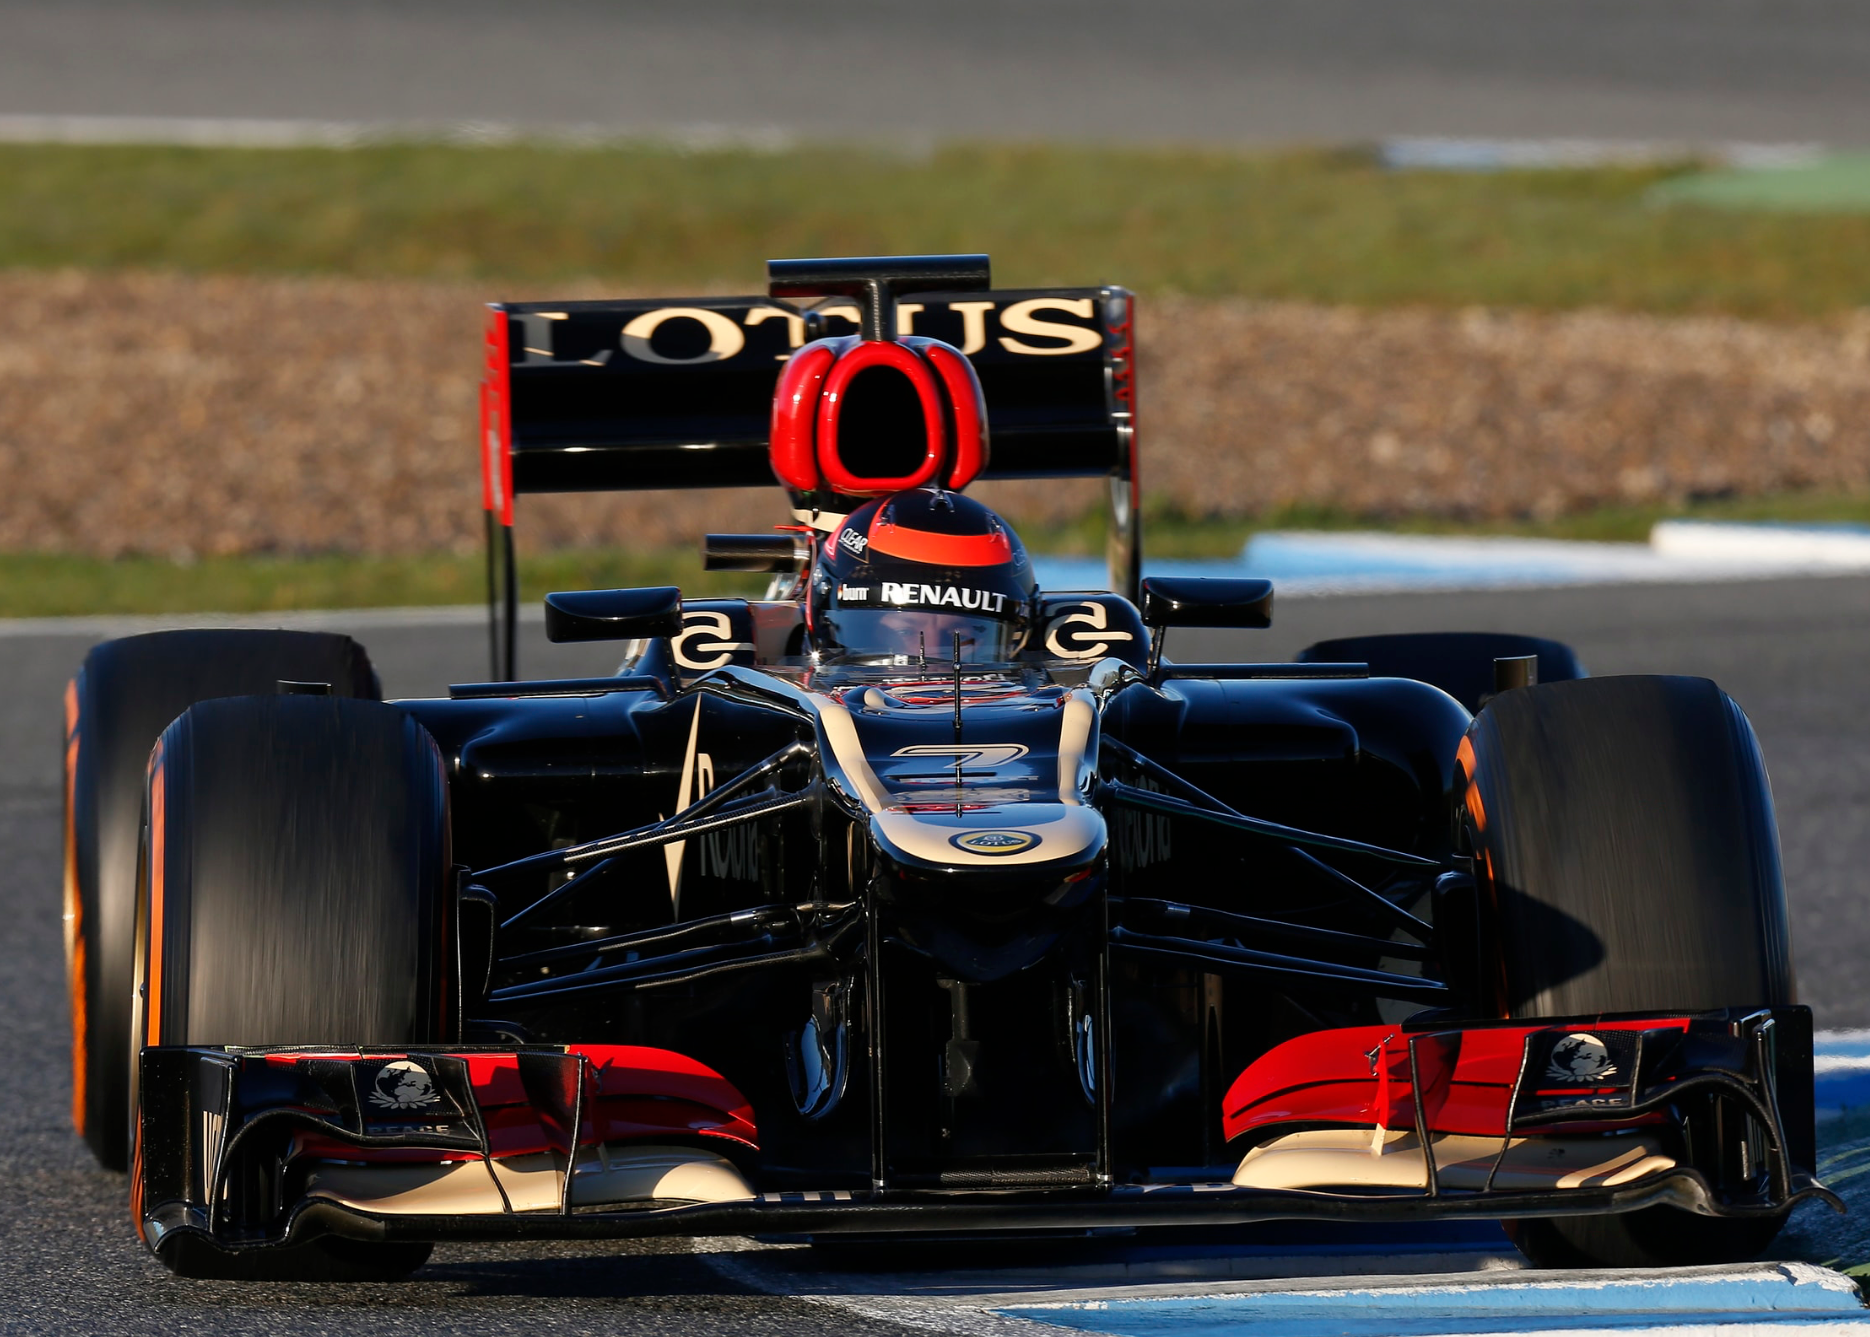 2013 Kimi Raikkonen Preseason Jerez Test Lotus F1 Helmet